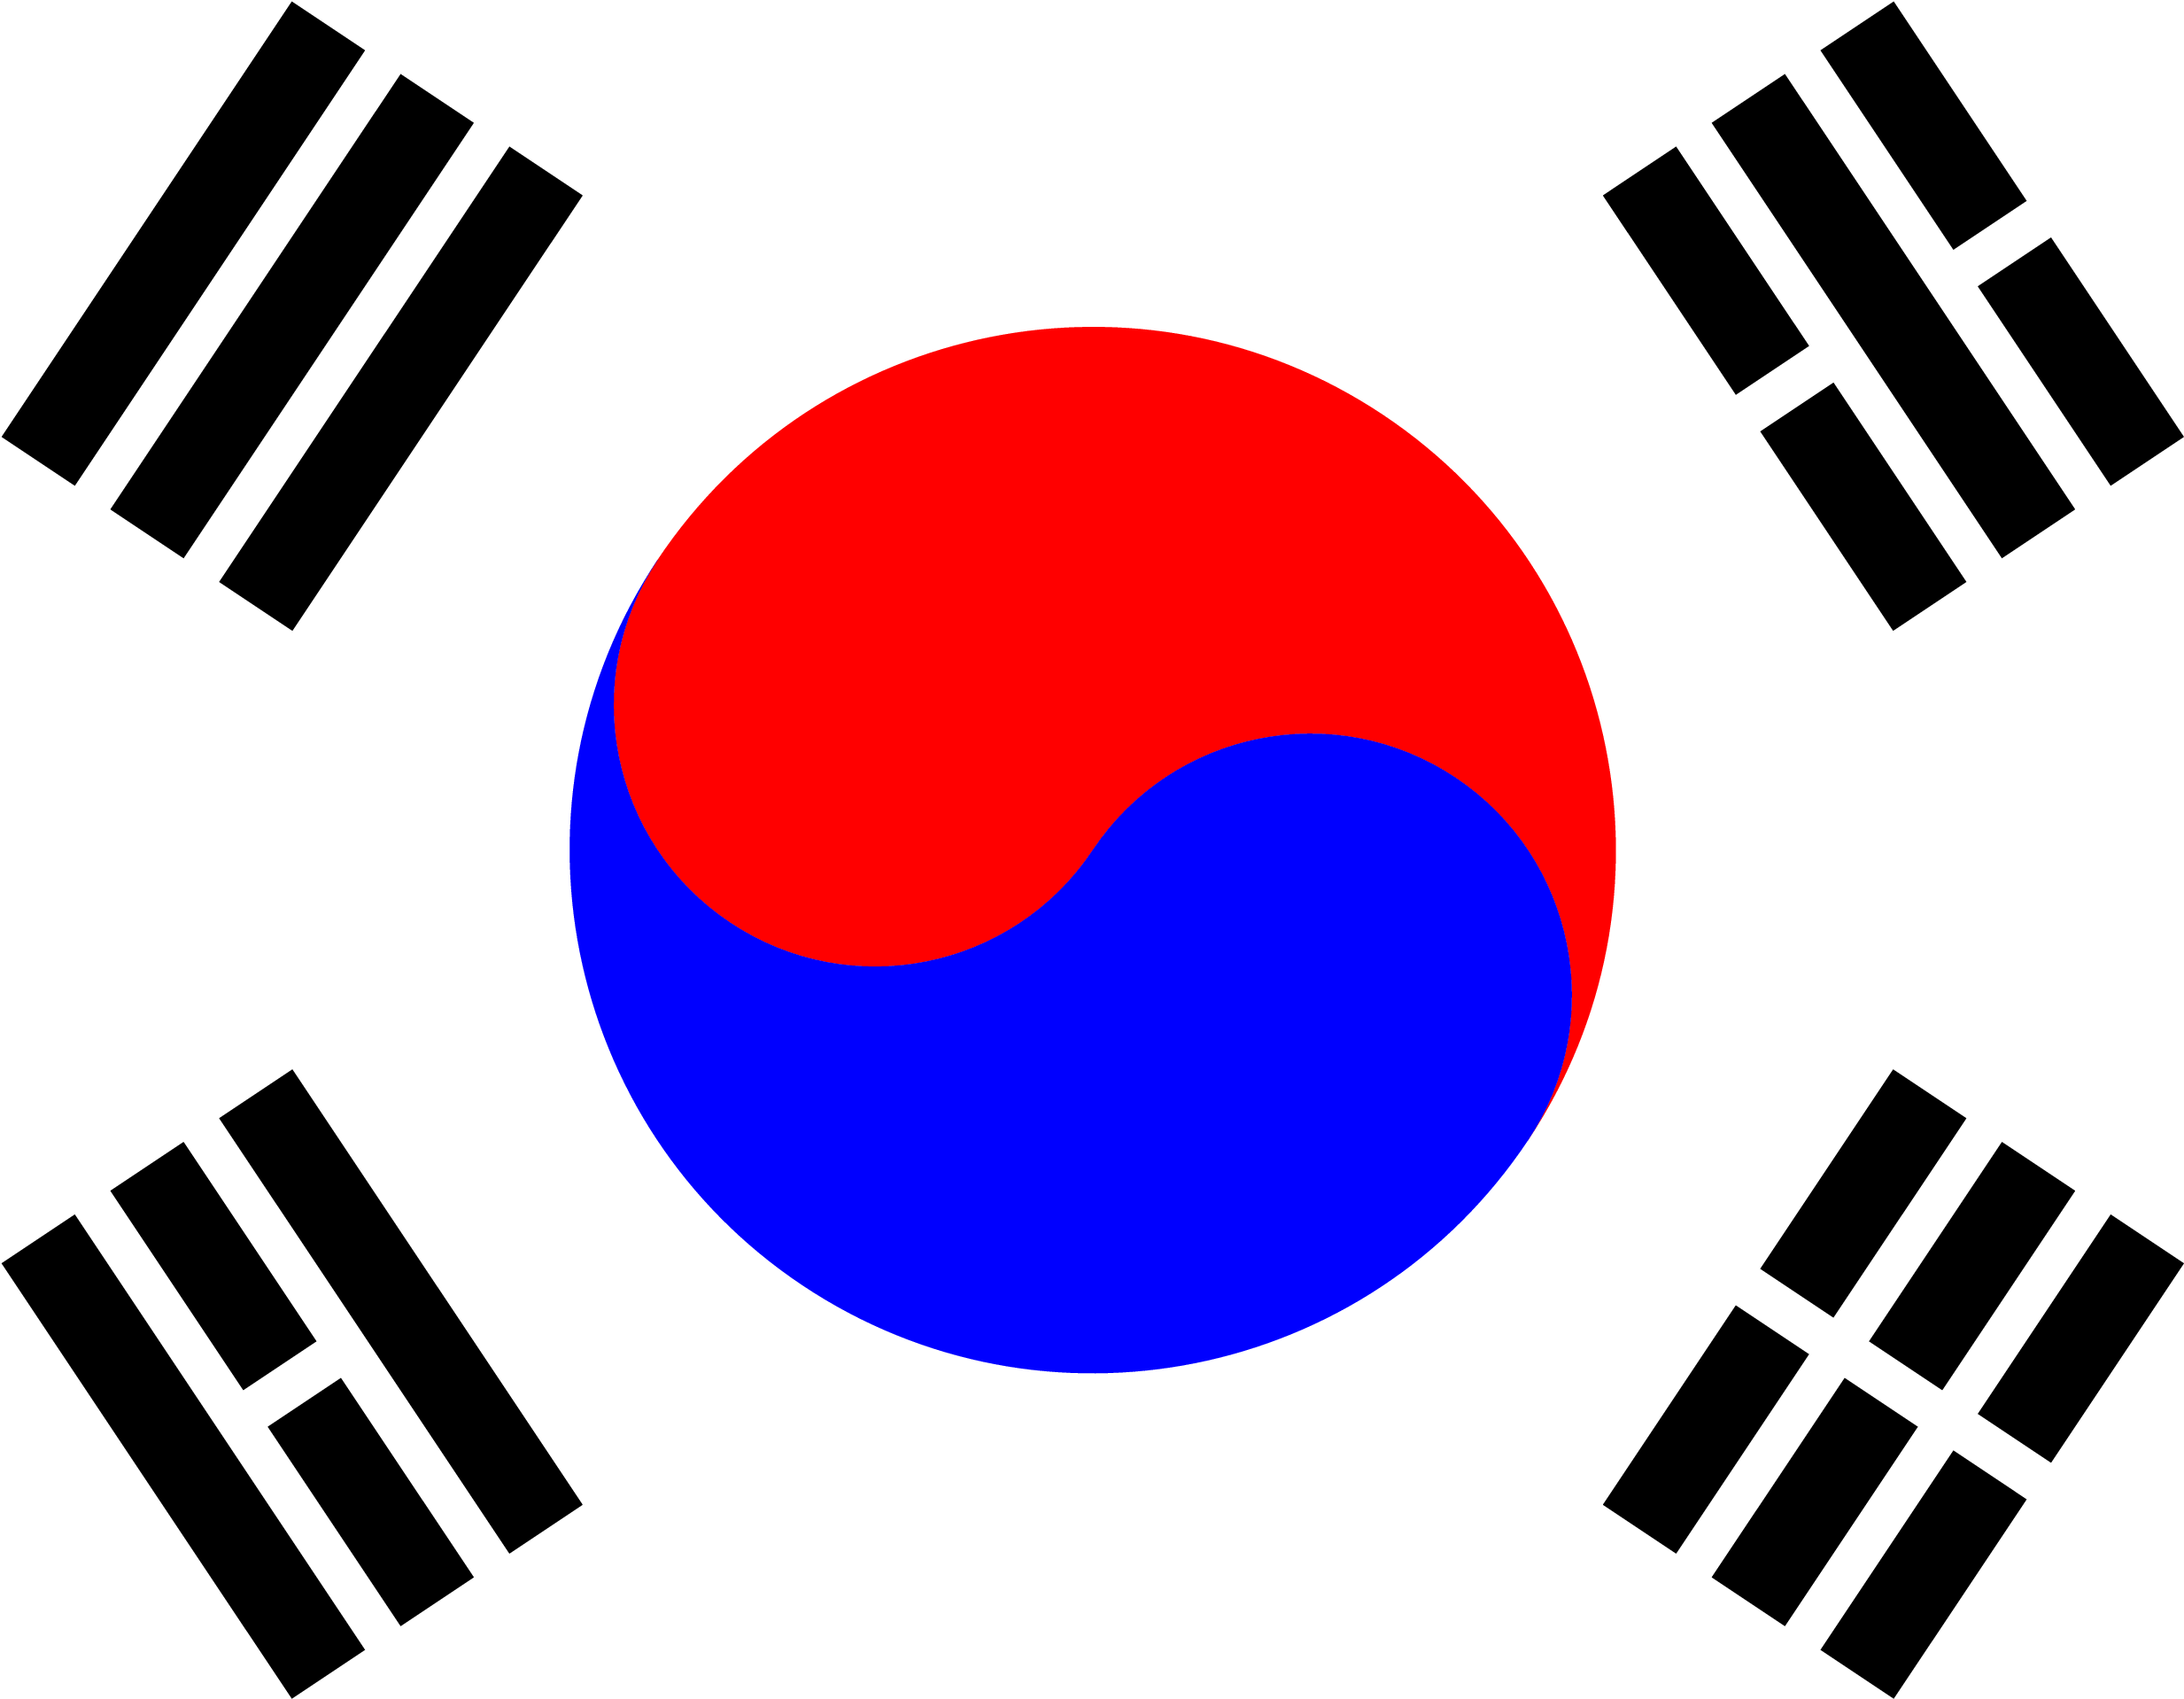 South Korea Flag PNG Image